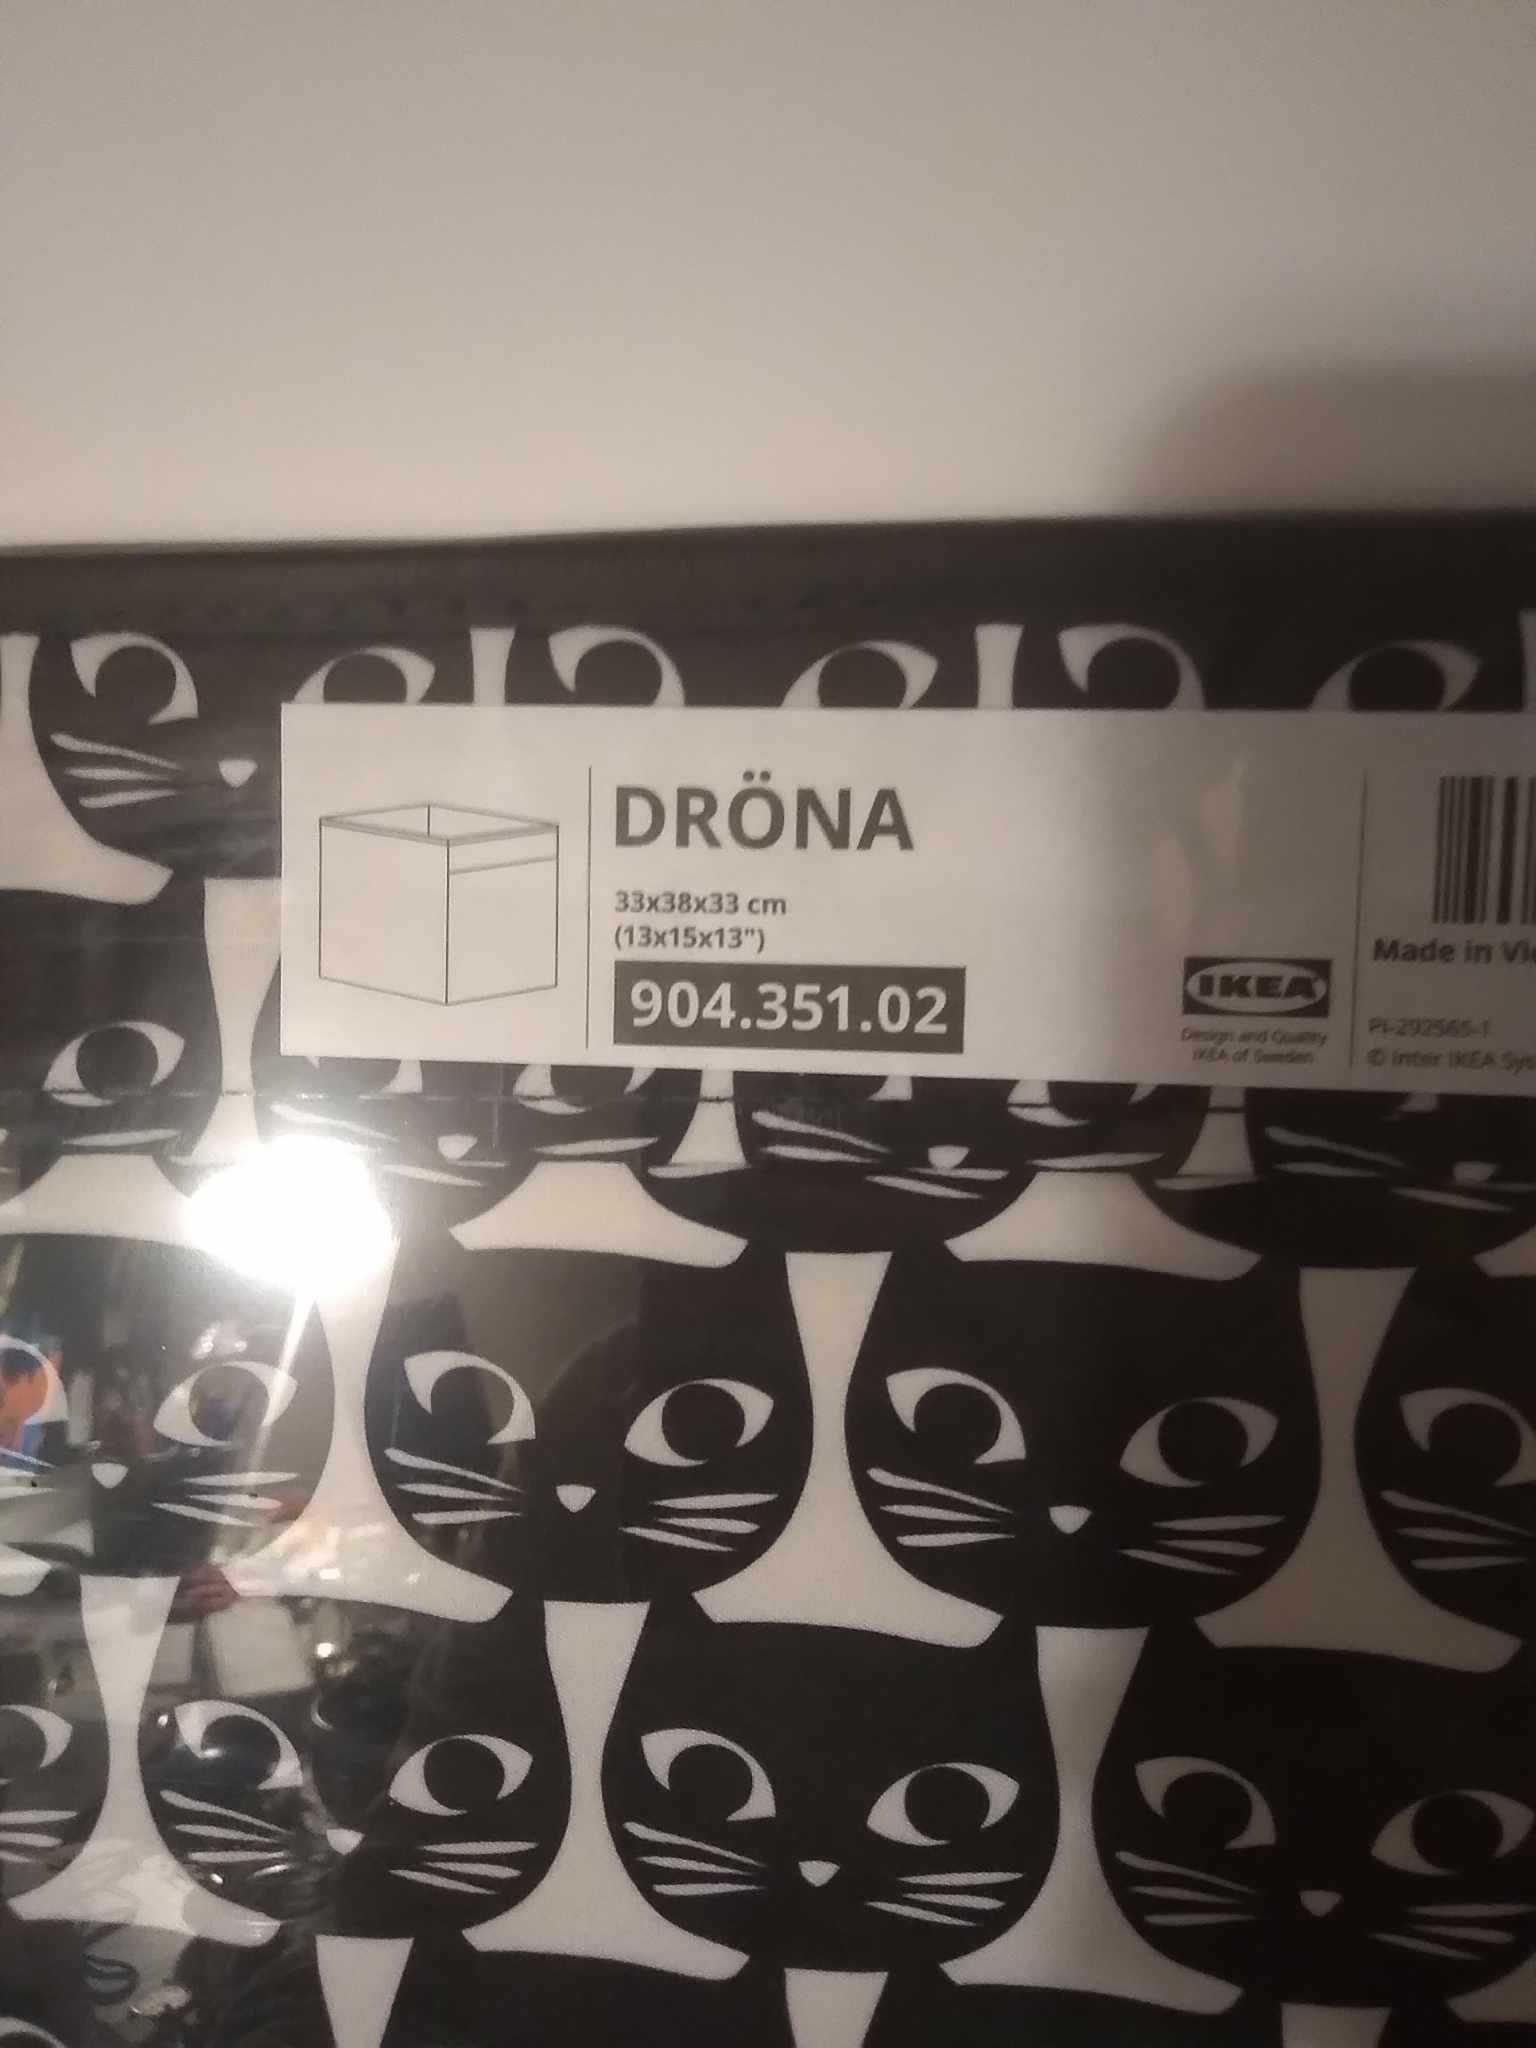 pudełko płócienne drona ikea